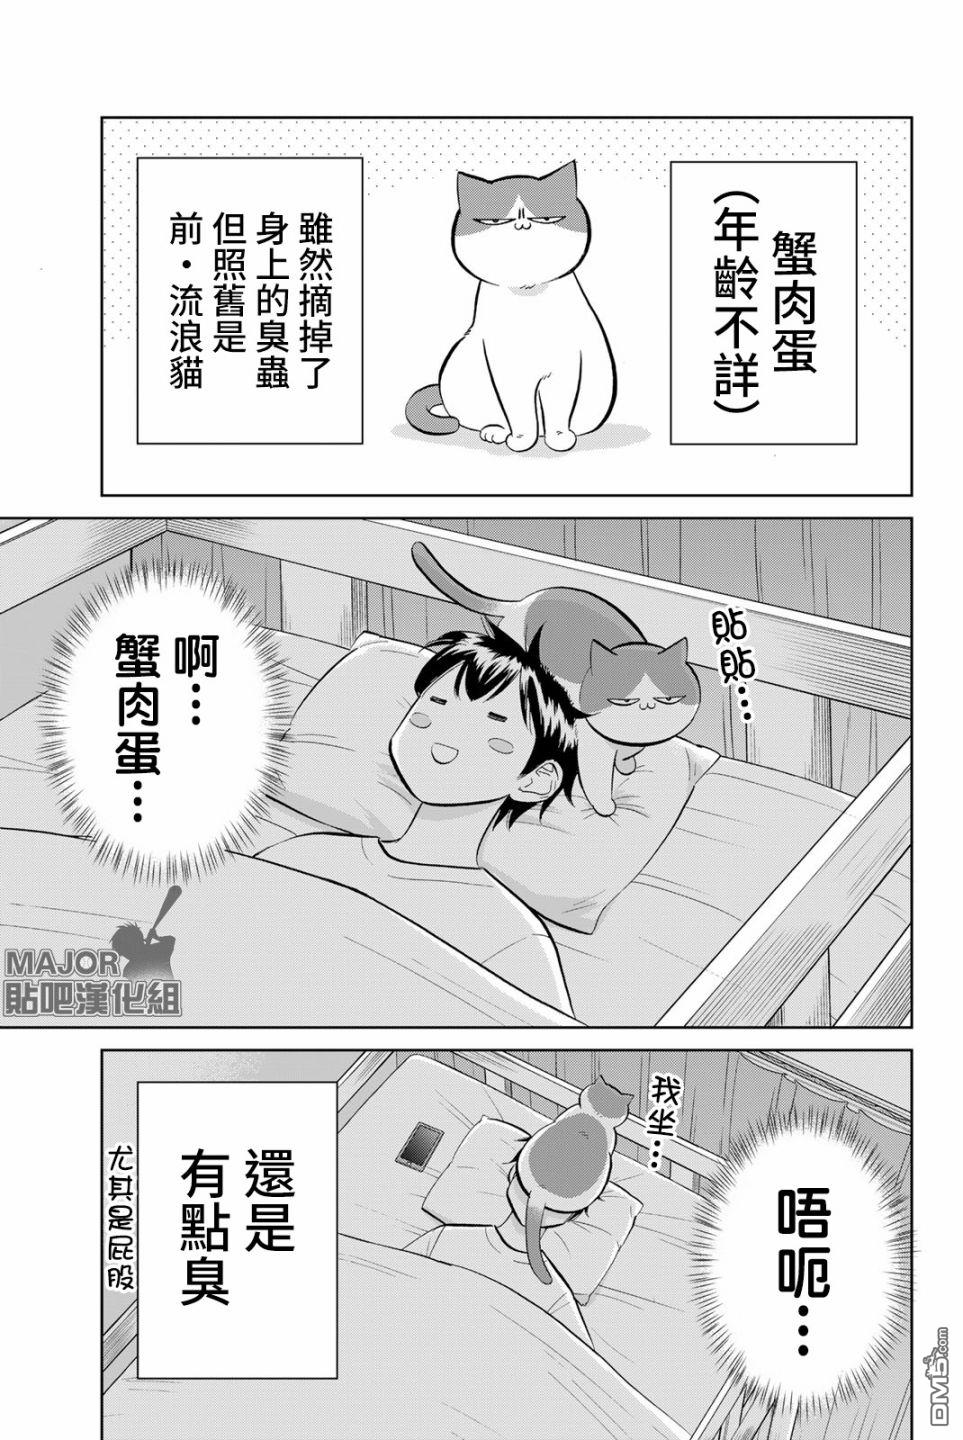 钻石猫猫!!青道高中棒球部猫日志第6话